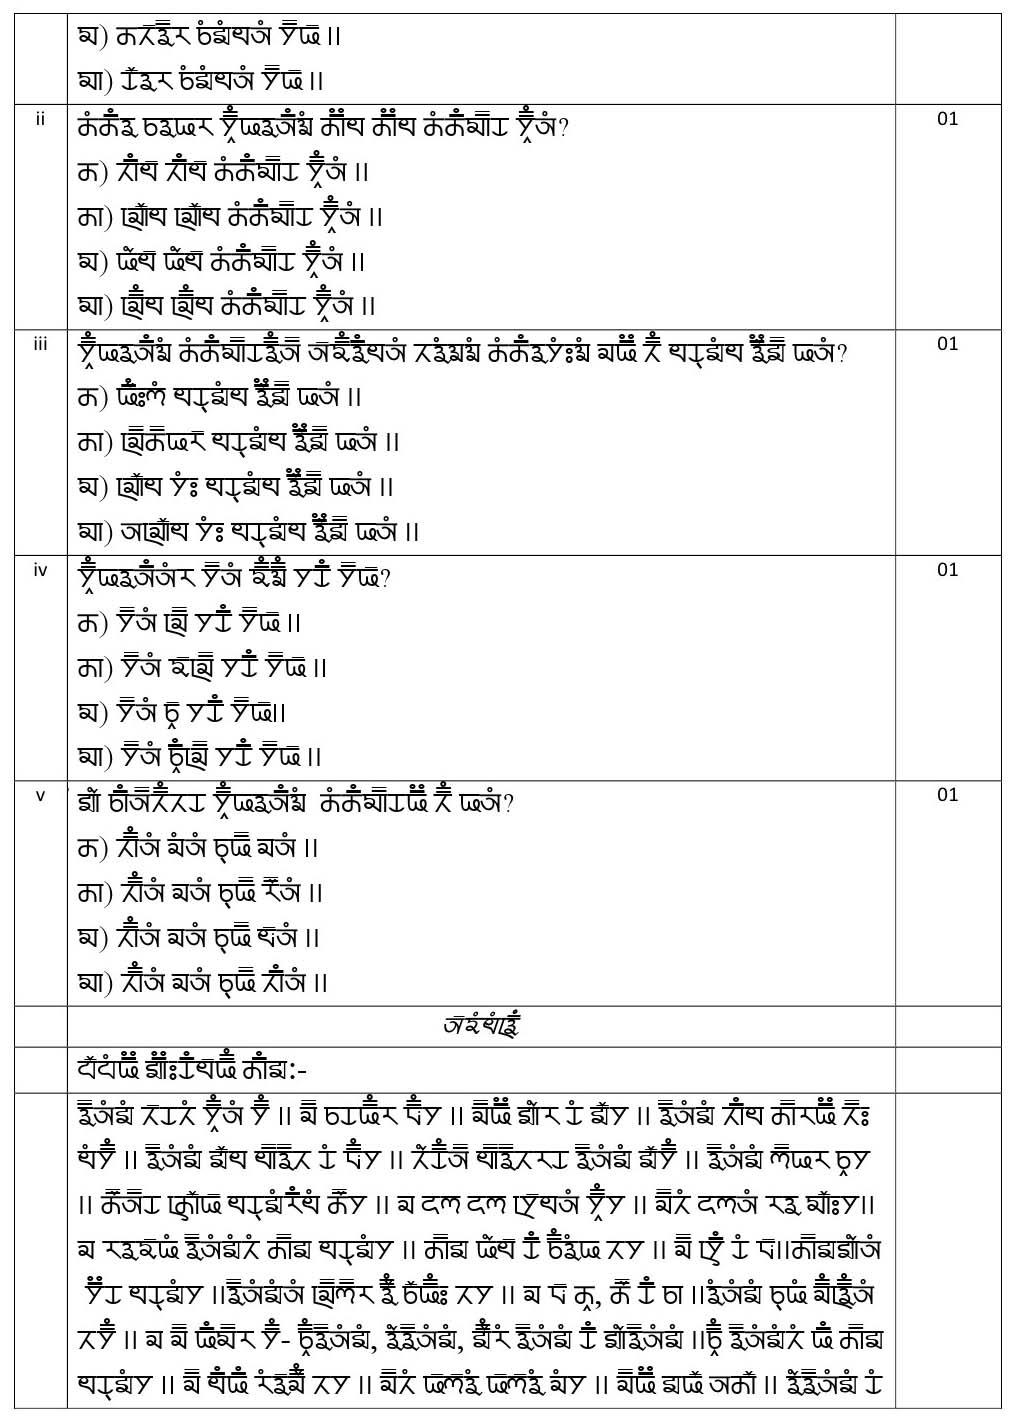 Gurung CBSE Class X Sample Question Paper 2020 21 - Image 2